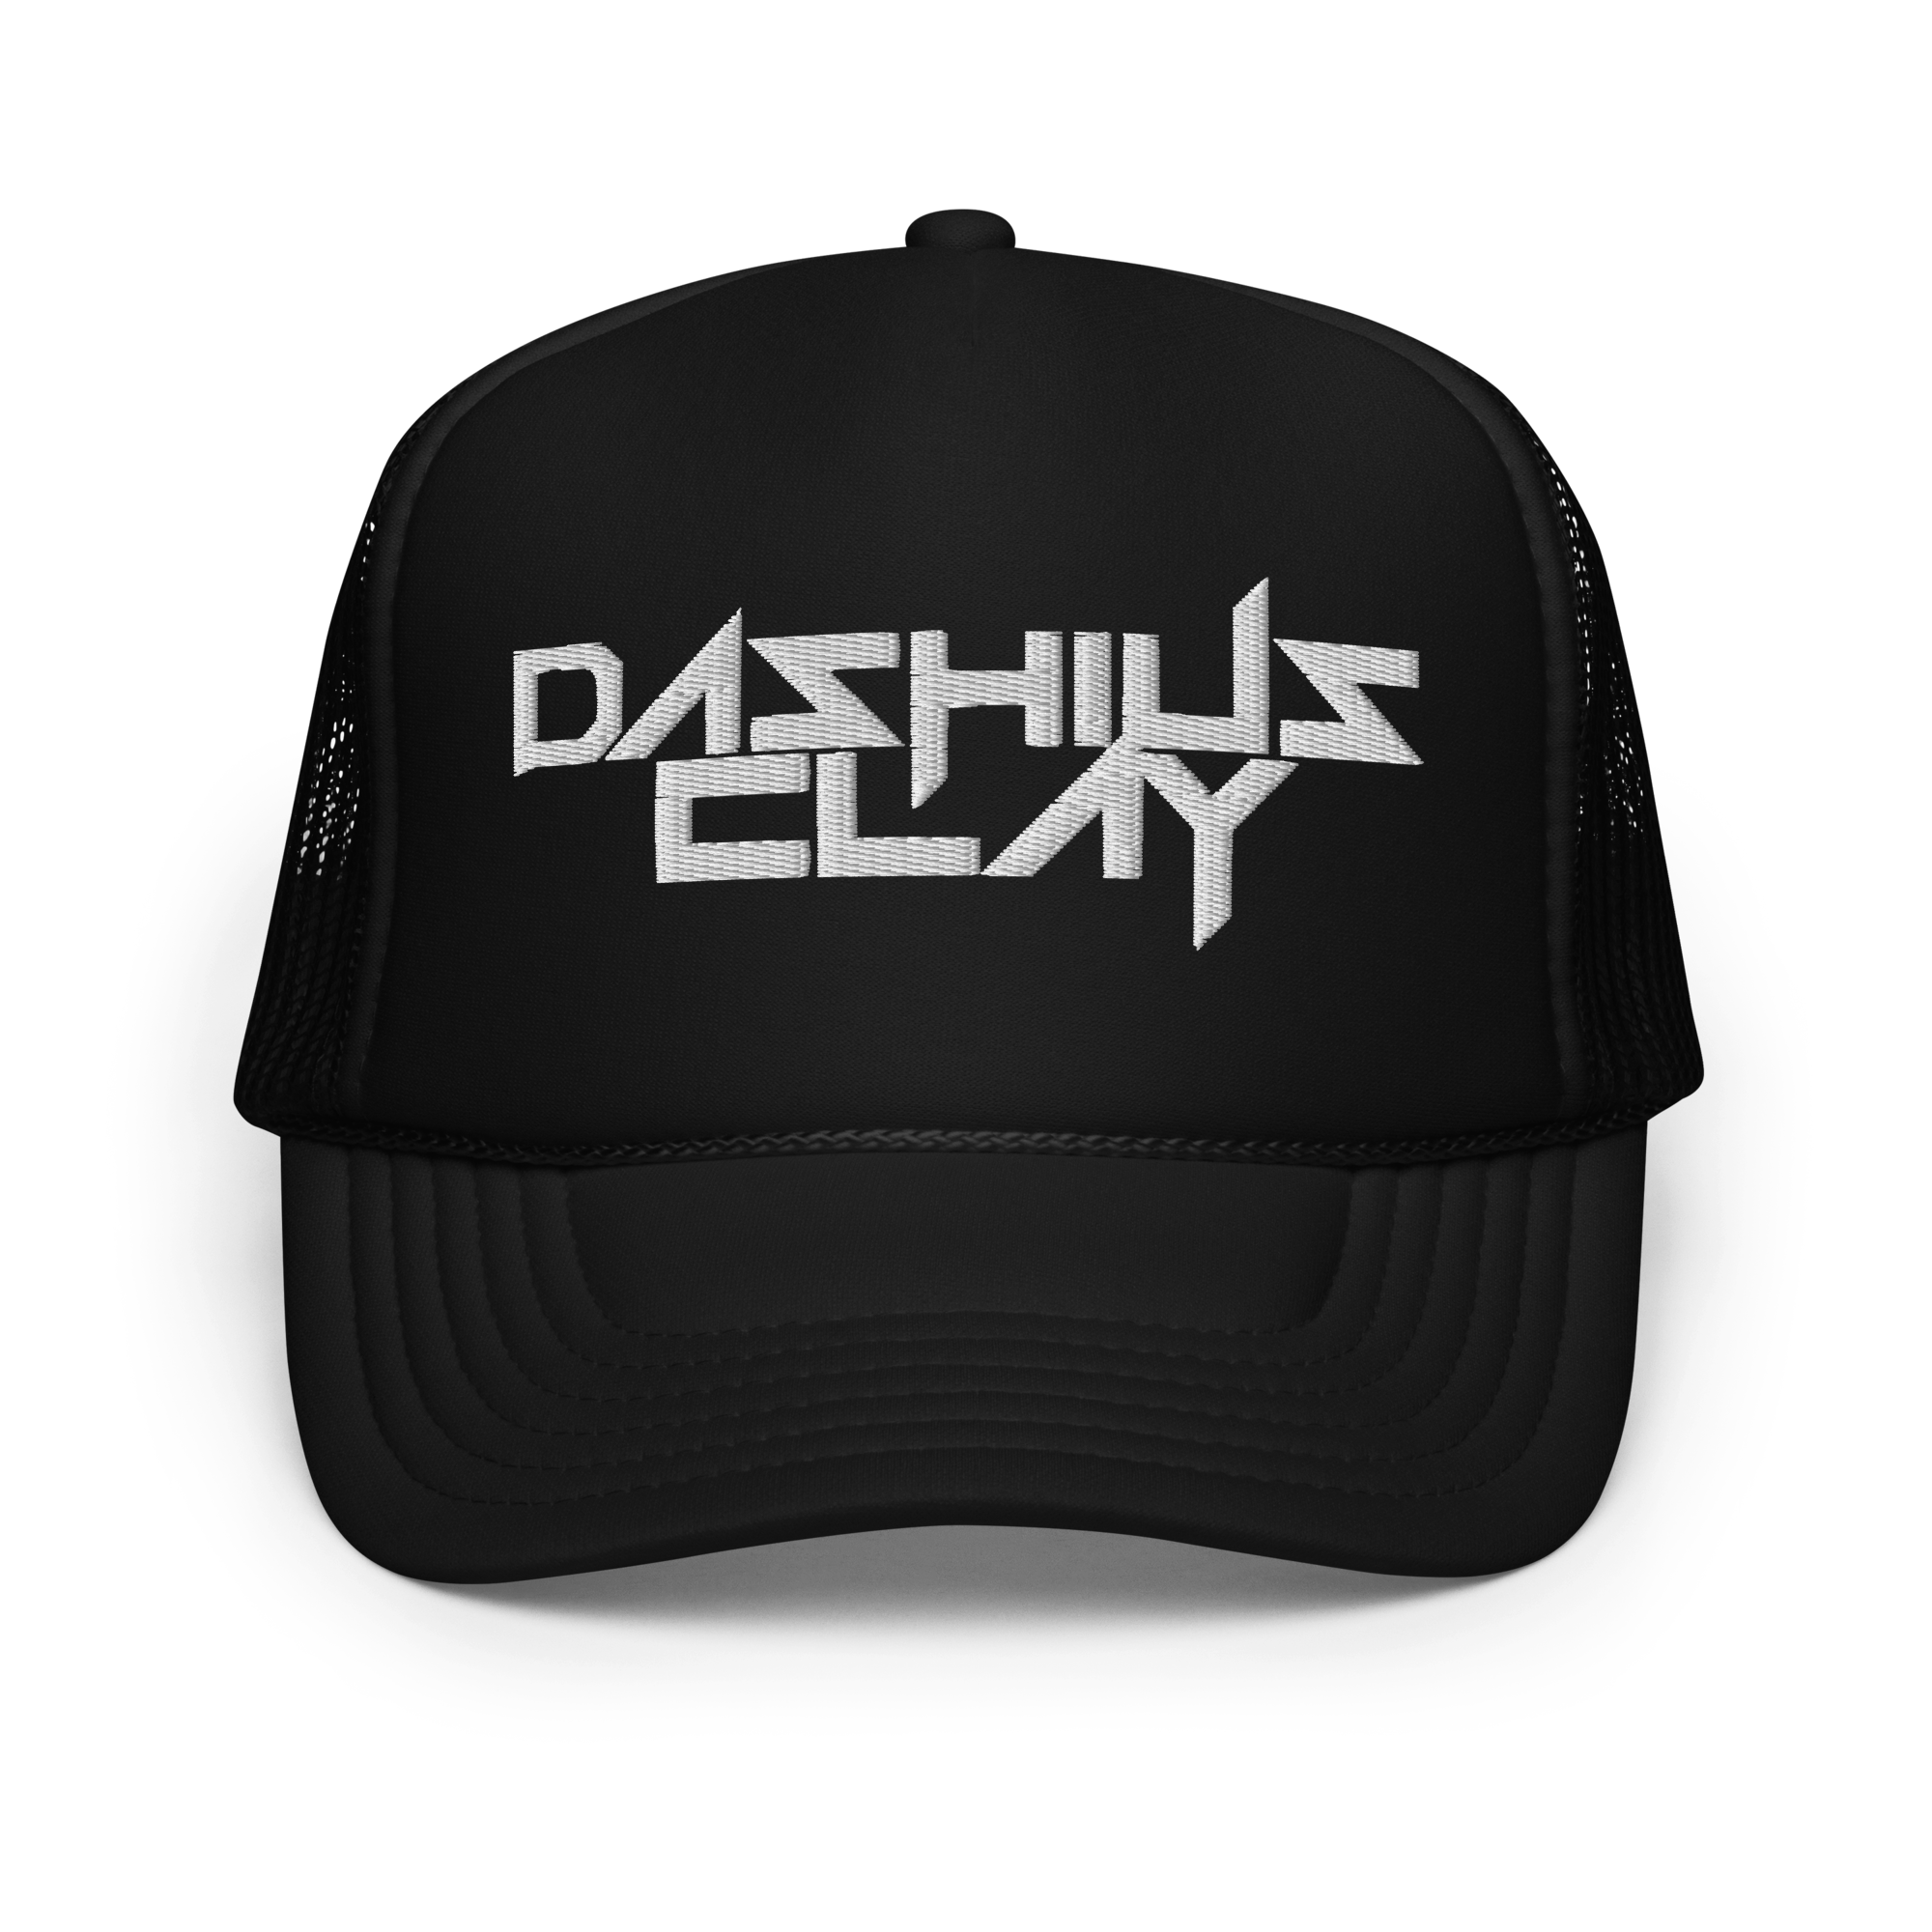 DASHIUS CLAY Trucker Hat – PLTNM Online Store